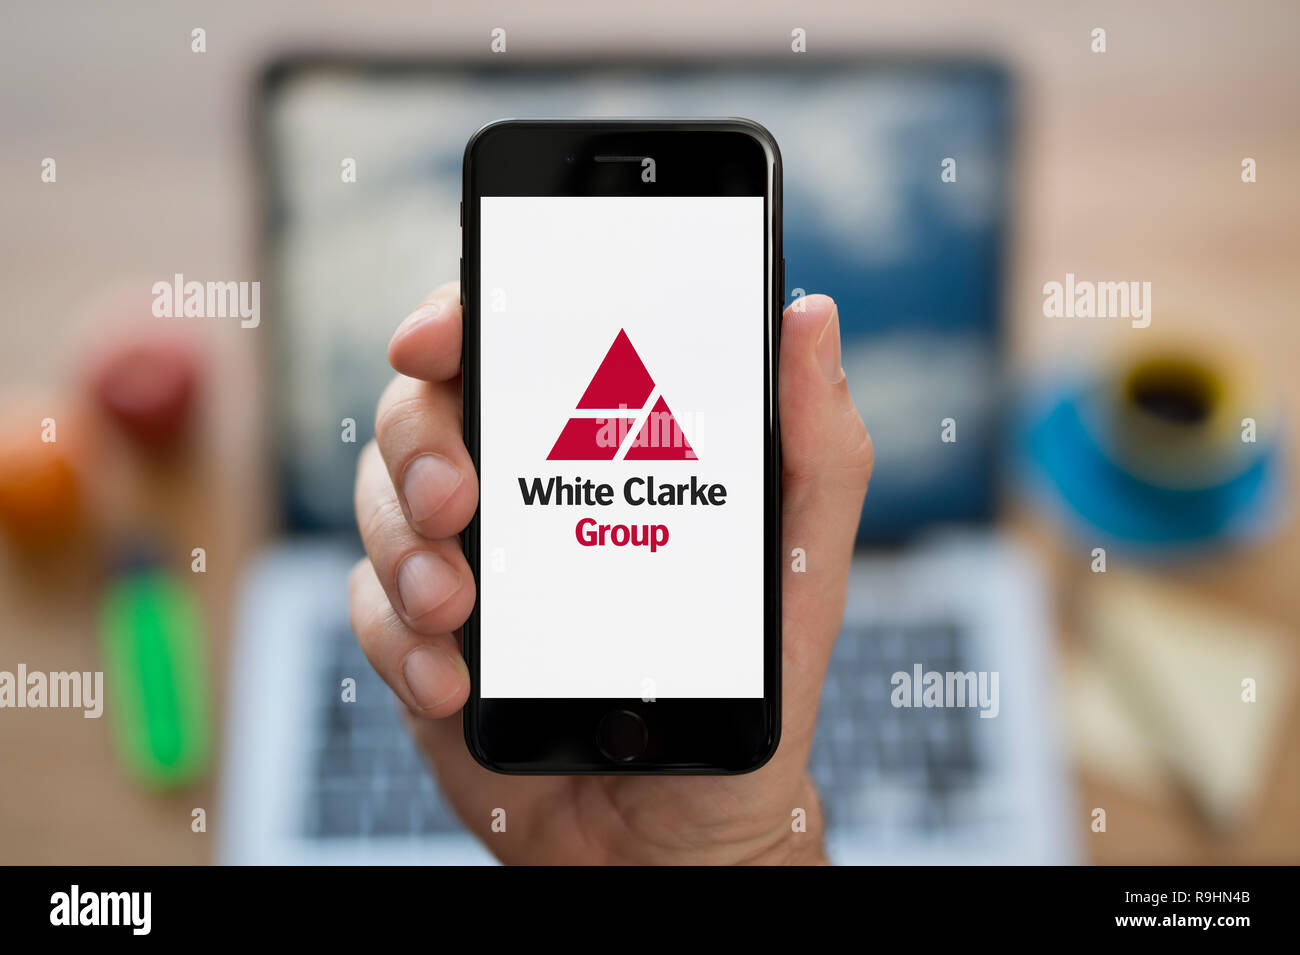 Un homme se penche sur son iPhone qui affiche le logo du groupe blanc Clarke (usage éditorial uniquement). Banque D'Images